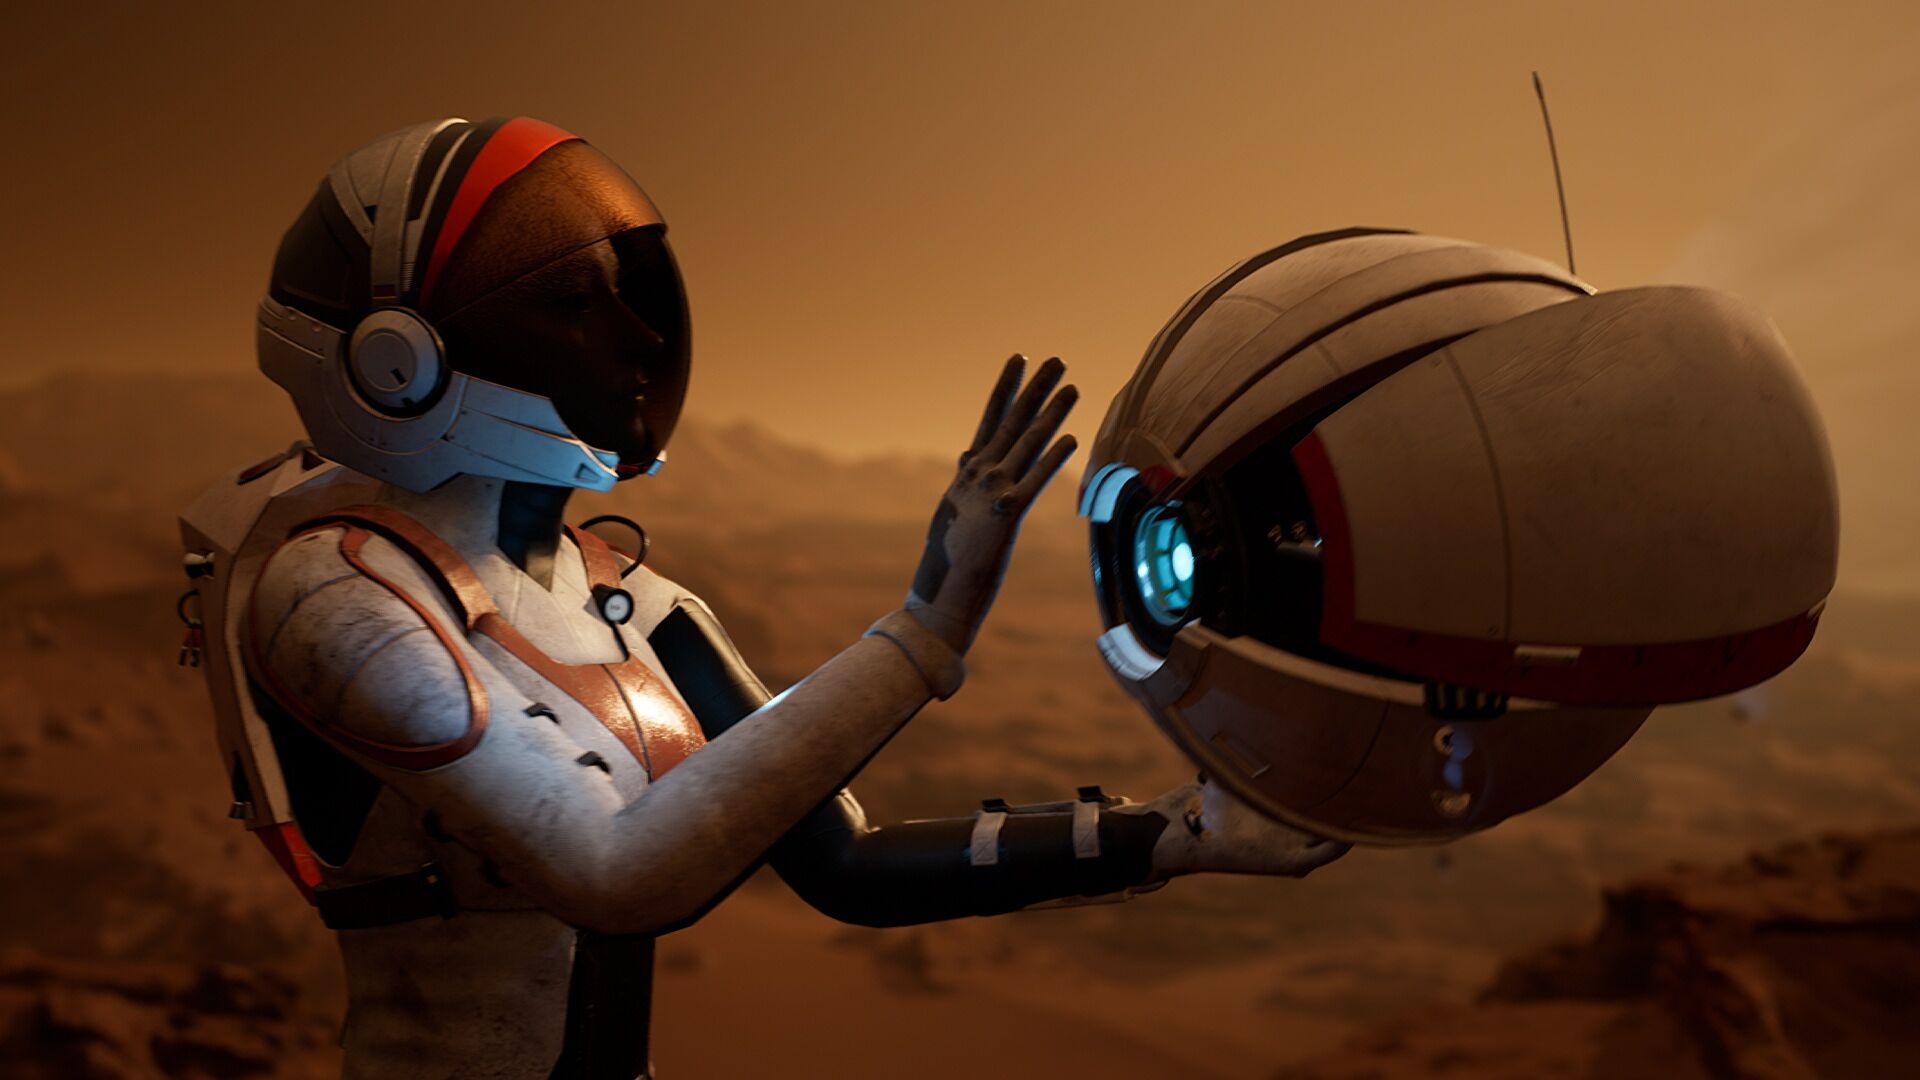 Sci-fi sequel Deliver Us Mars delayed until 2023